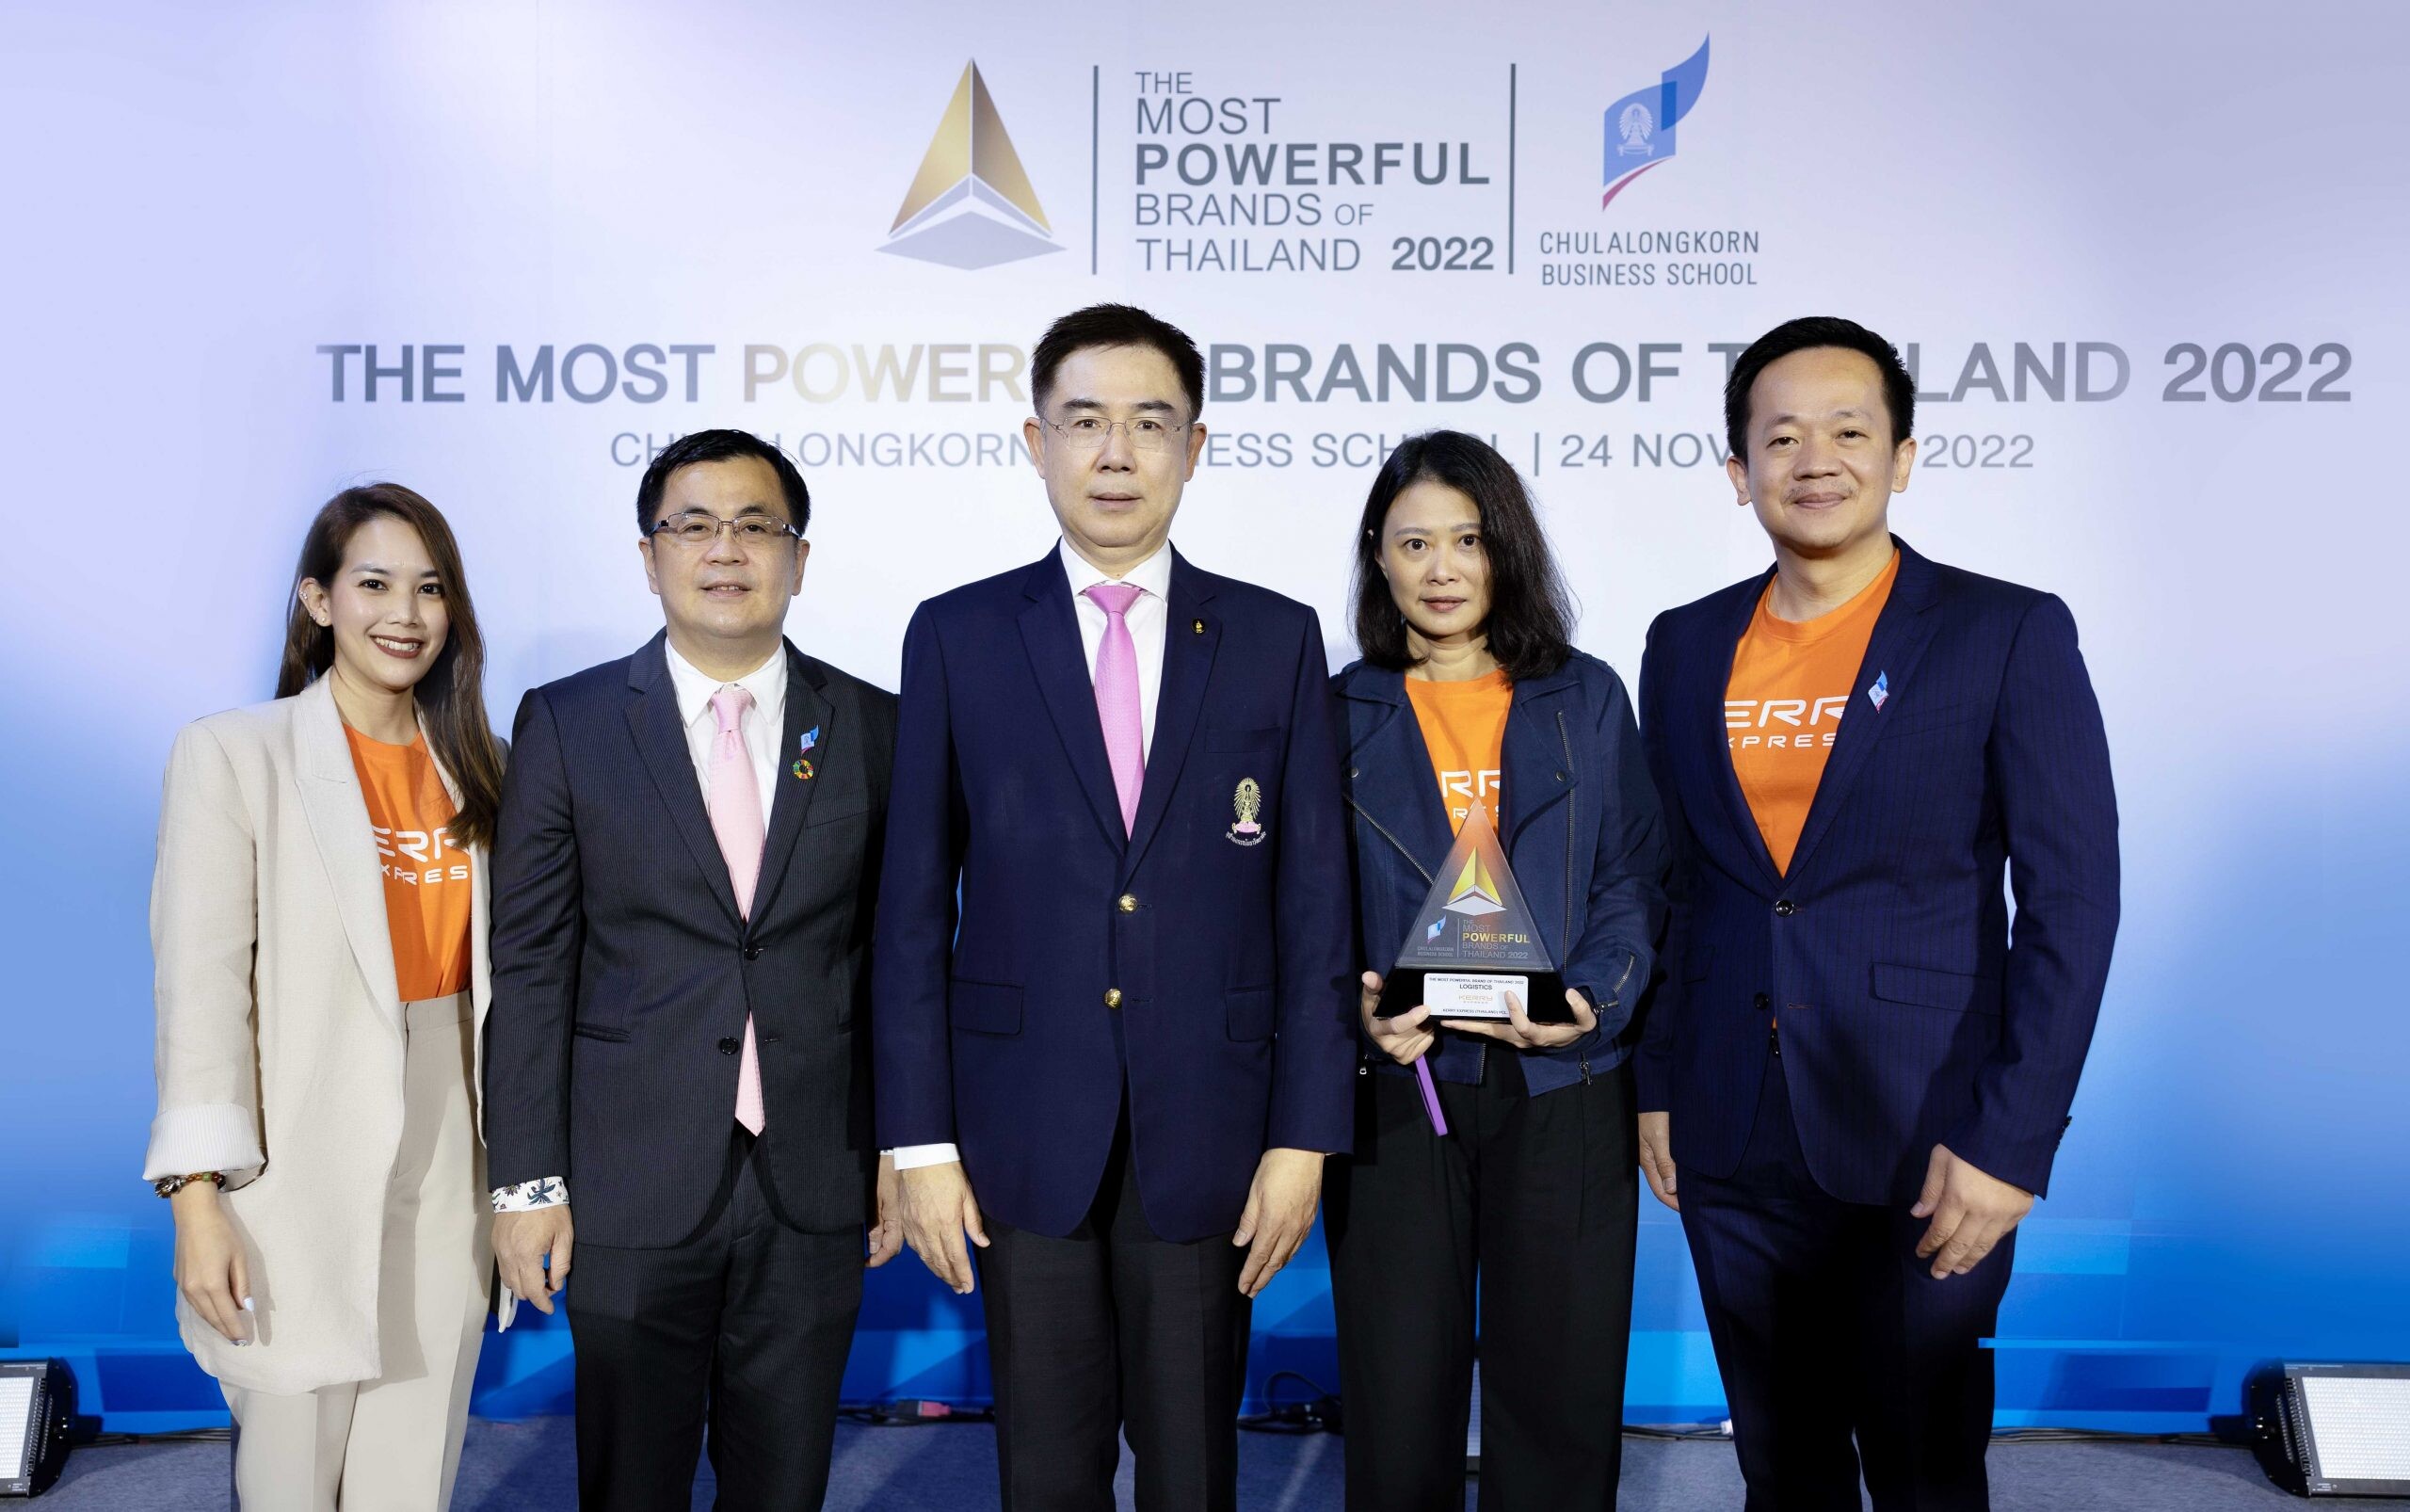 สุดปัง! เคอรี่ เอ็กซ์เพรส ส่งท้ายปี 65 คว้าอีกรางวัล "สุดยอดแบรนด์ทรงพลัง" จากเวที The Most Powerful Brands of Thailand 2022 ตอกย้ำความเป็นผู้นำตลาดขนส่งด่วนอันดับ 1 ในไทย